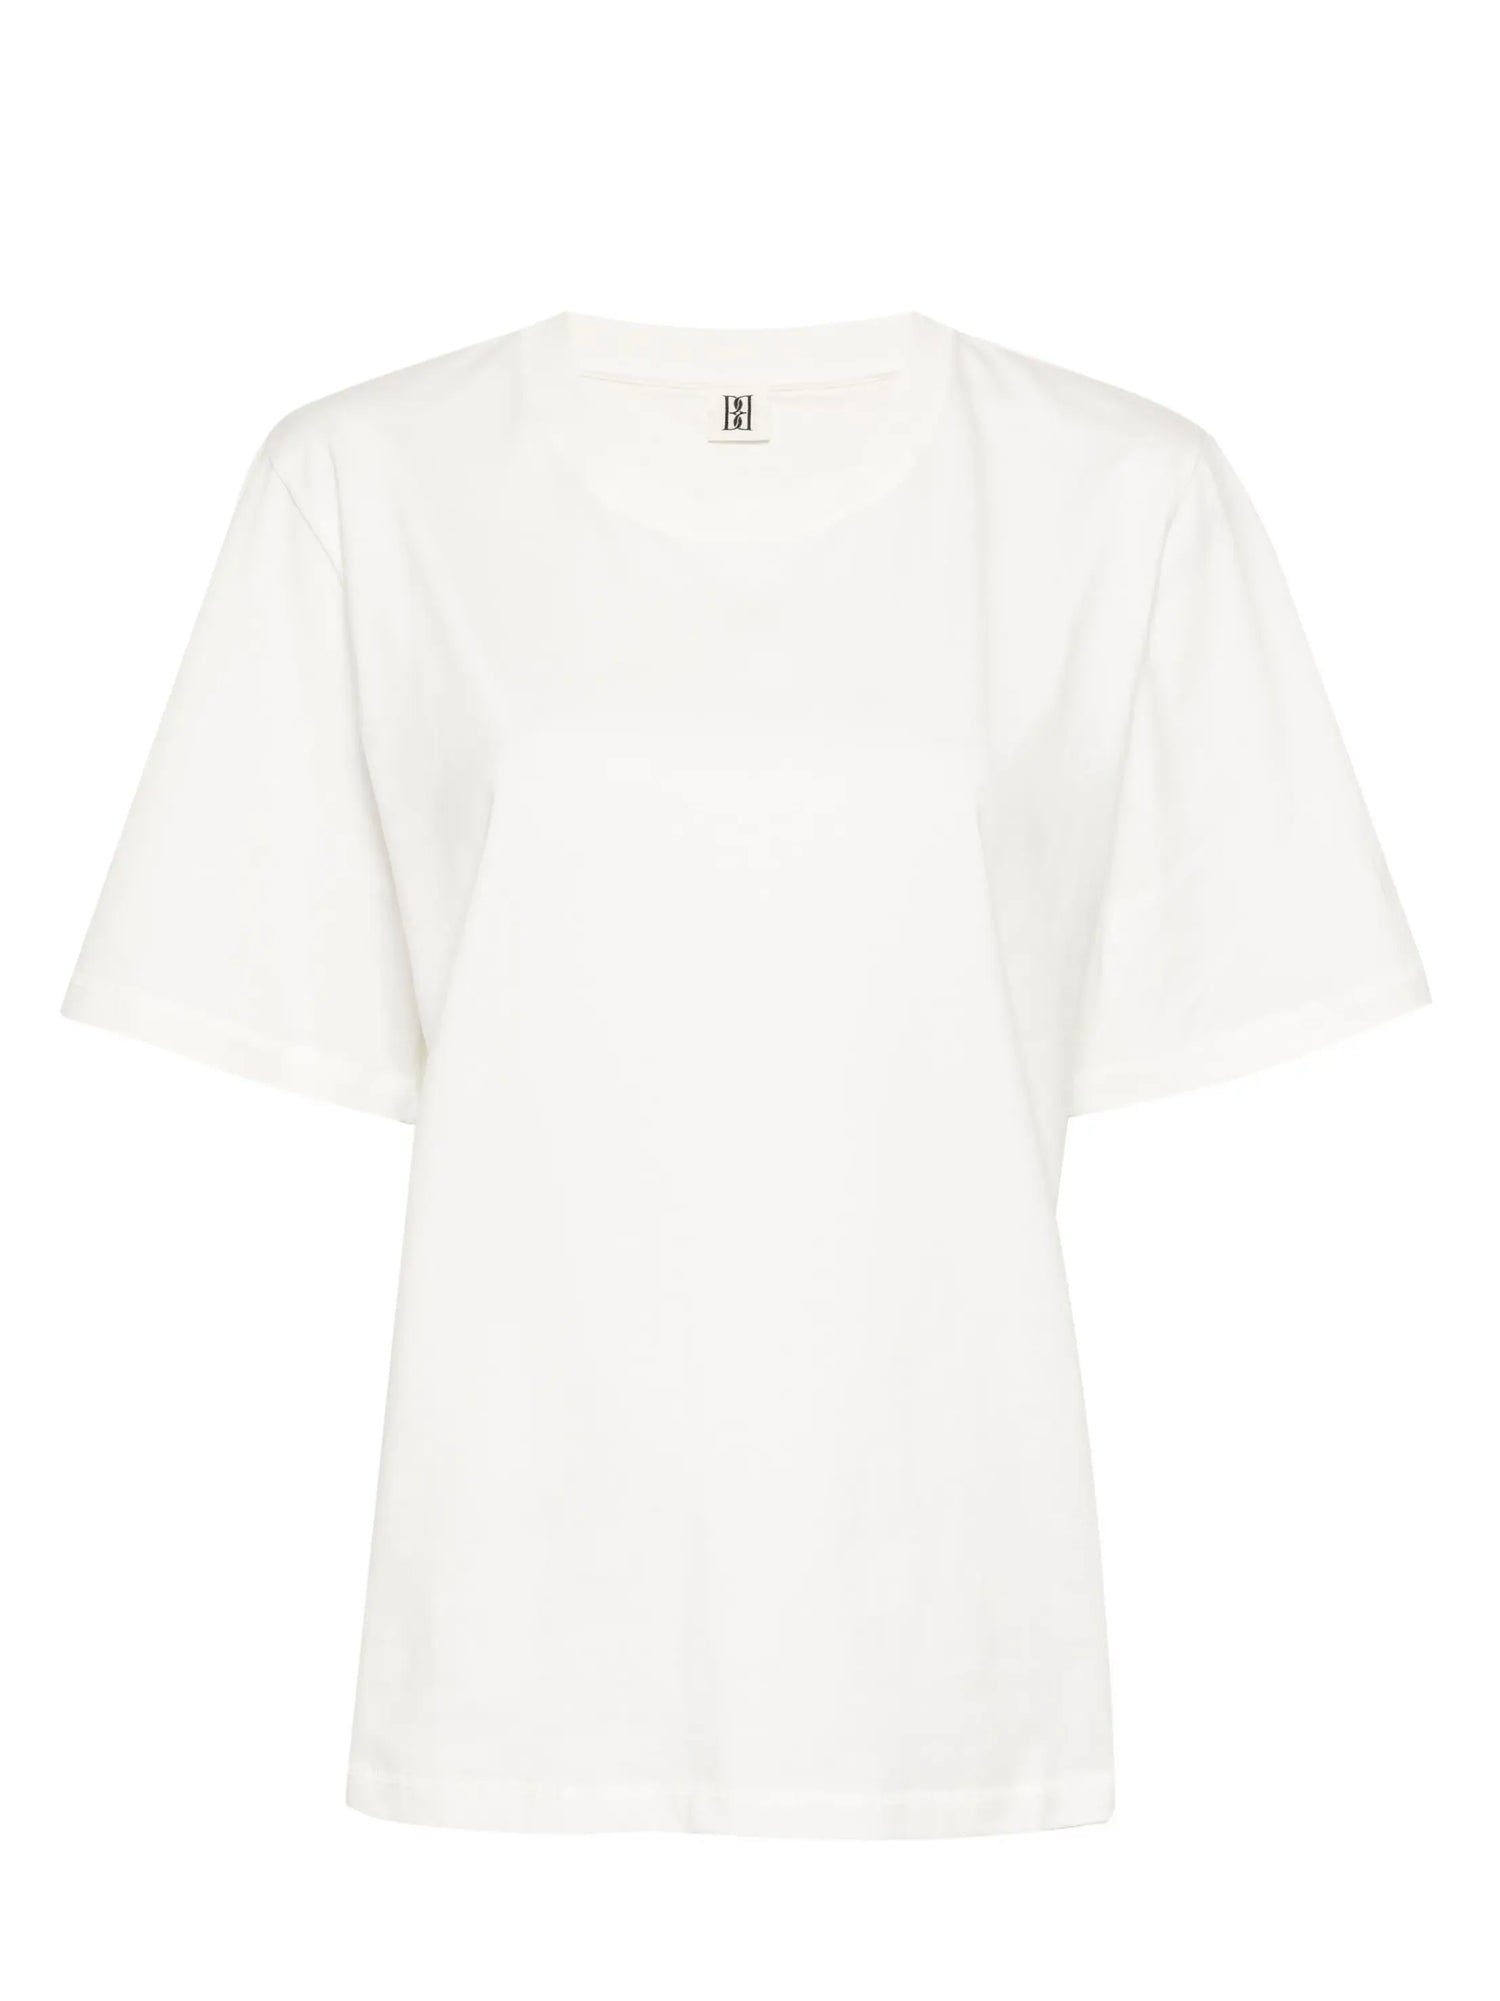 Hedil T-shirt, soft white